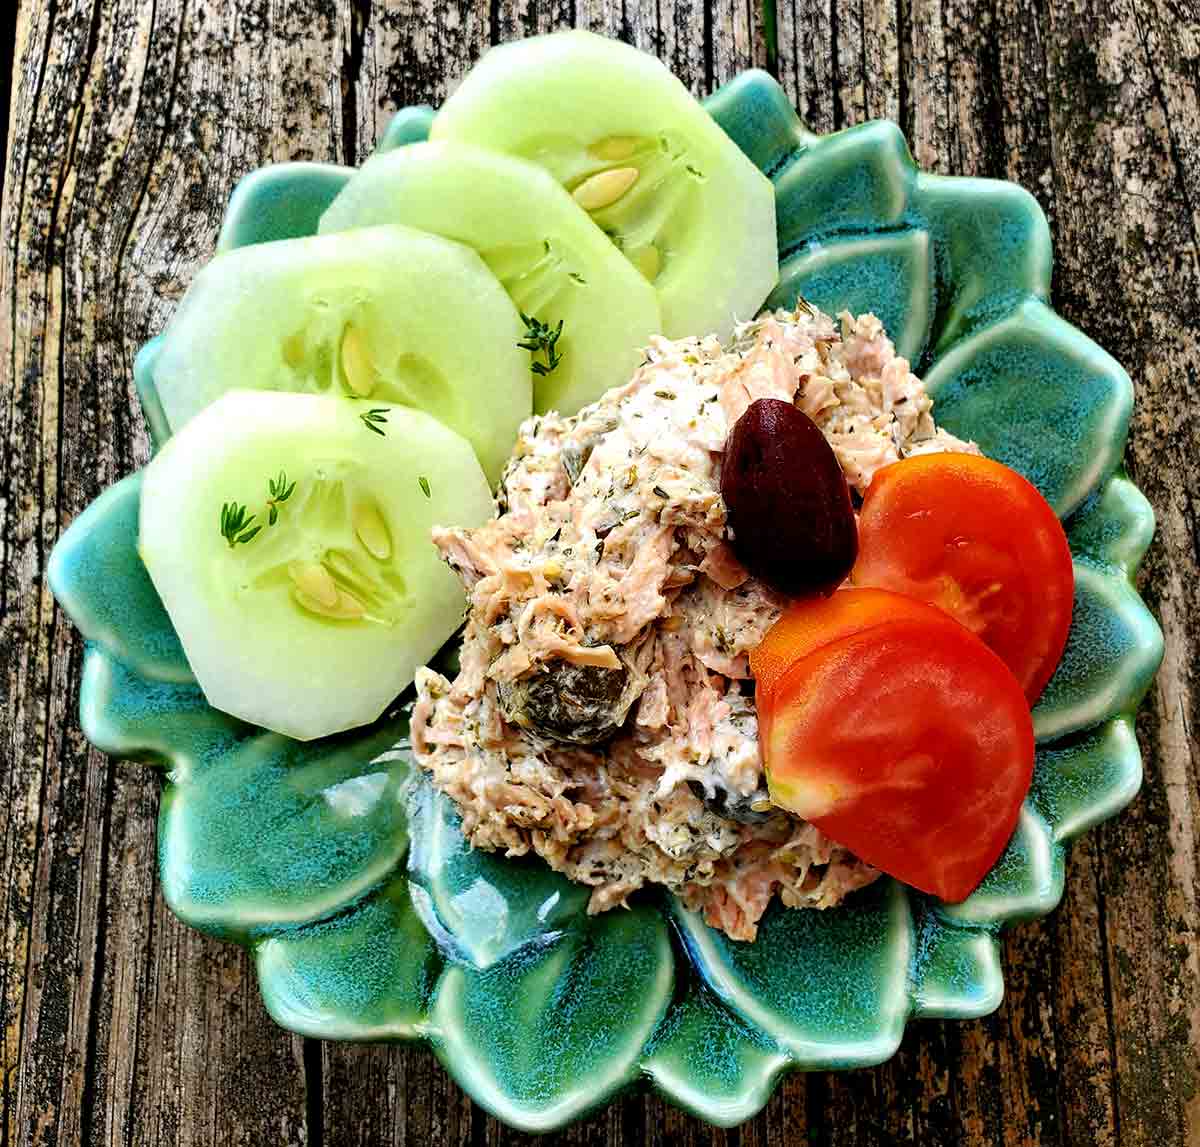 Tonfisksallad med kapris, yoghurt och Zaatar avbildad i en grön bladformad skål på ett träbord.